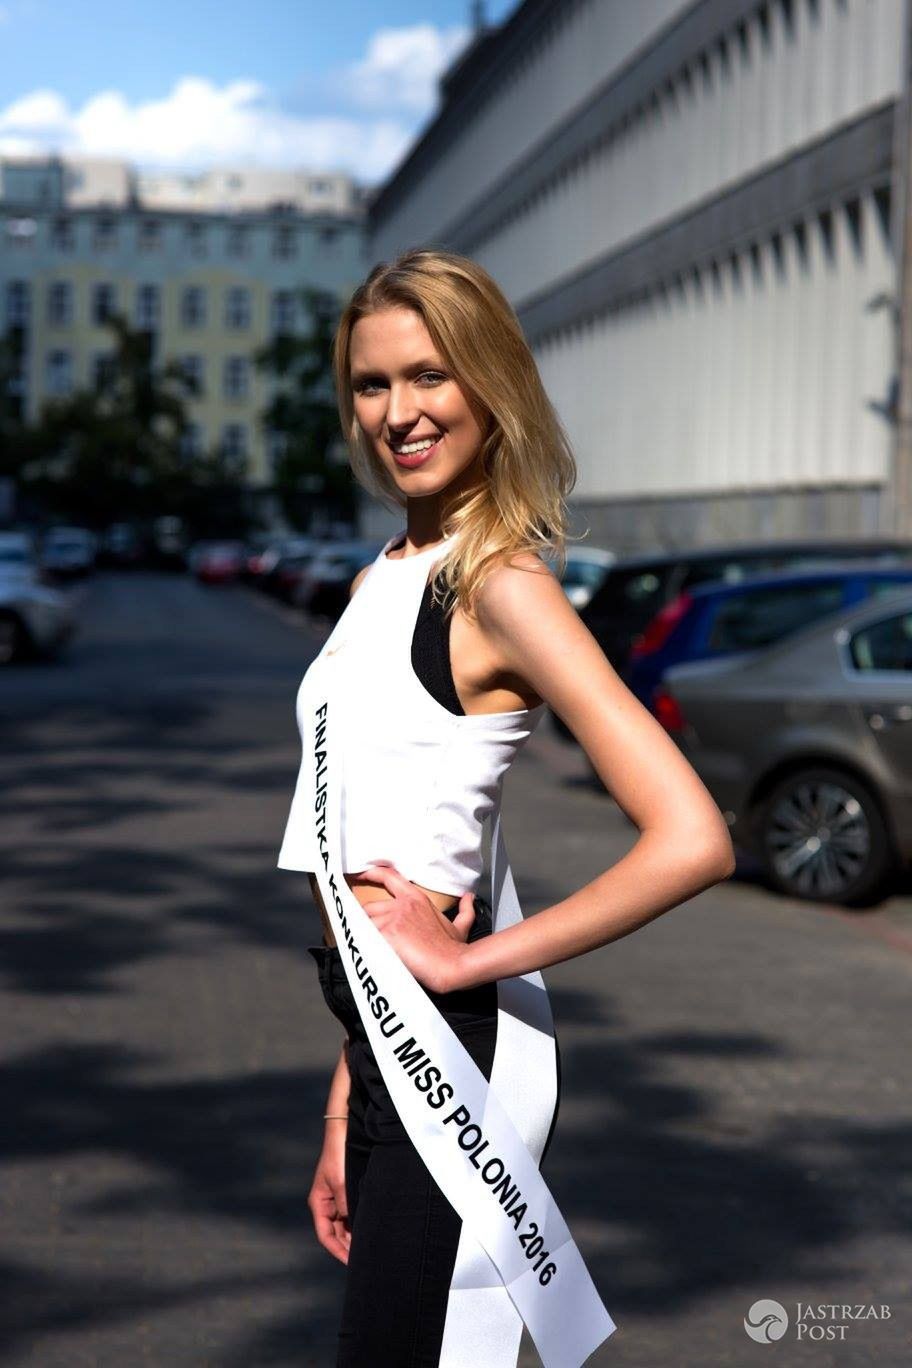 Uczestniczka konkursu Miss Polonia 2016: ALEKSANDRA WOŹNICA, Warszawa, woj. mazowieckie 19 lat, wzrost 176 cm (fot. Facebook.com/OfficialMissPolonia)